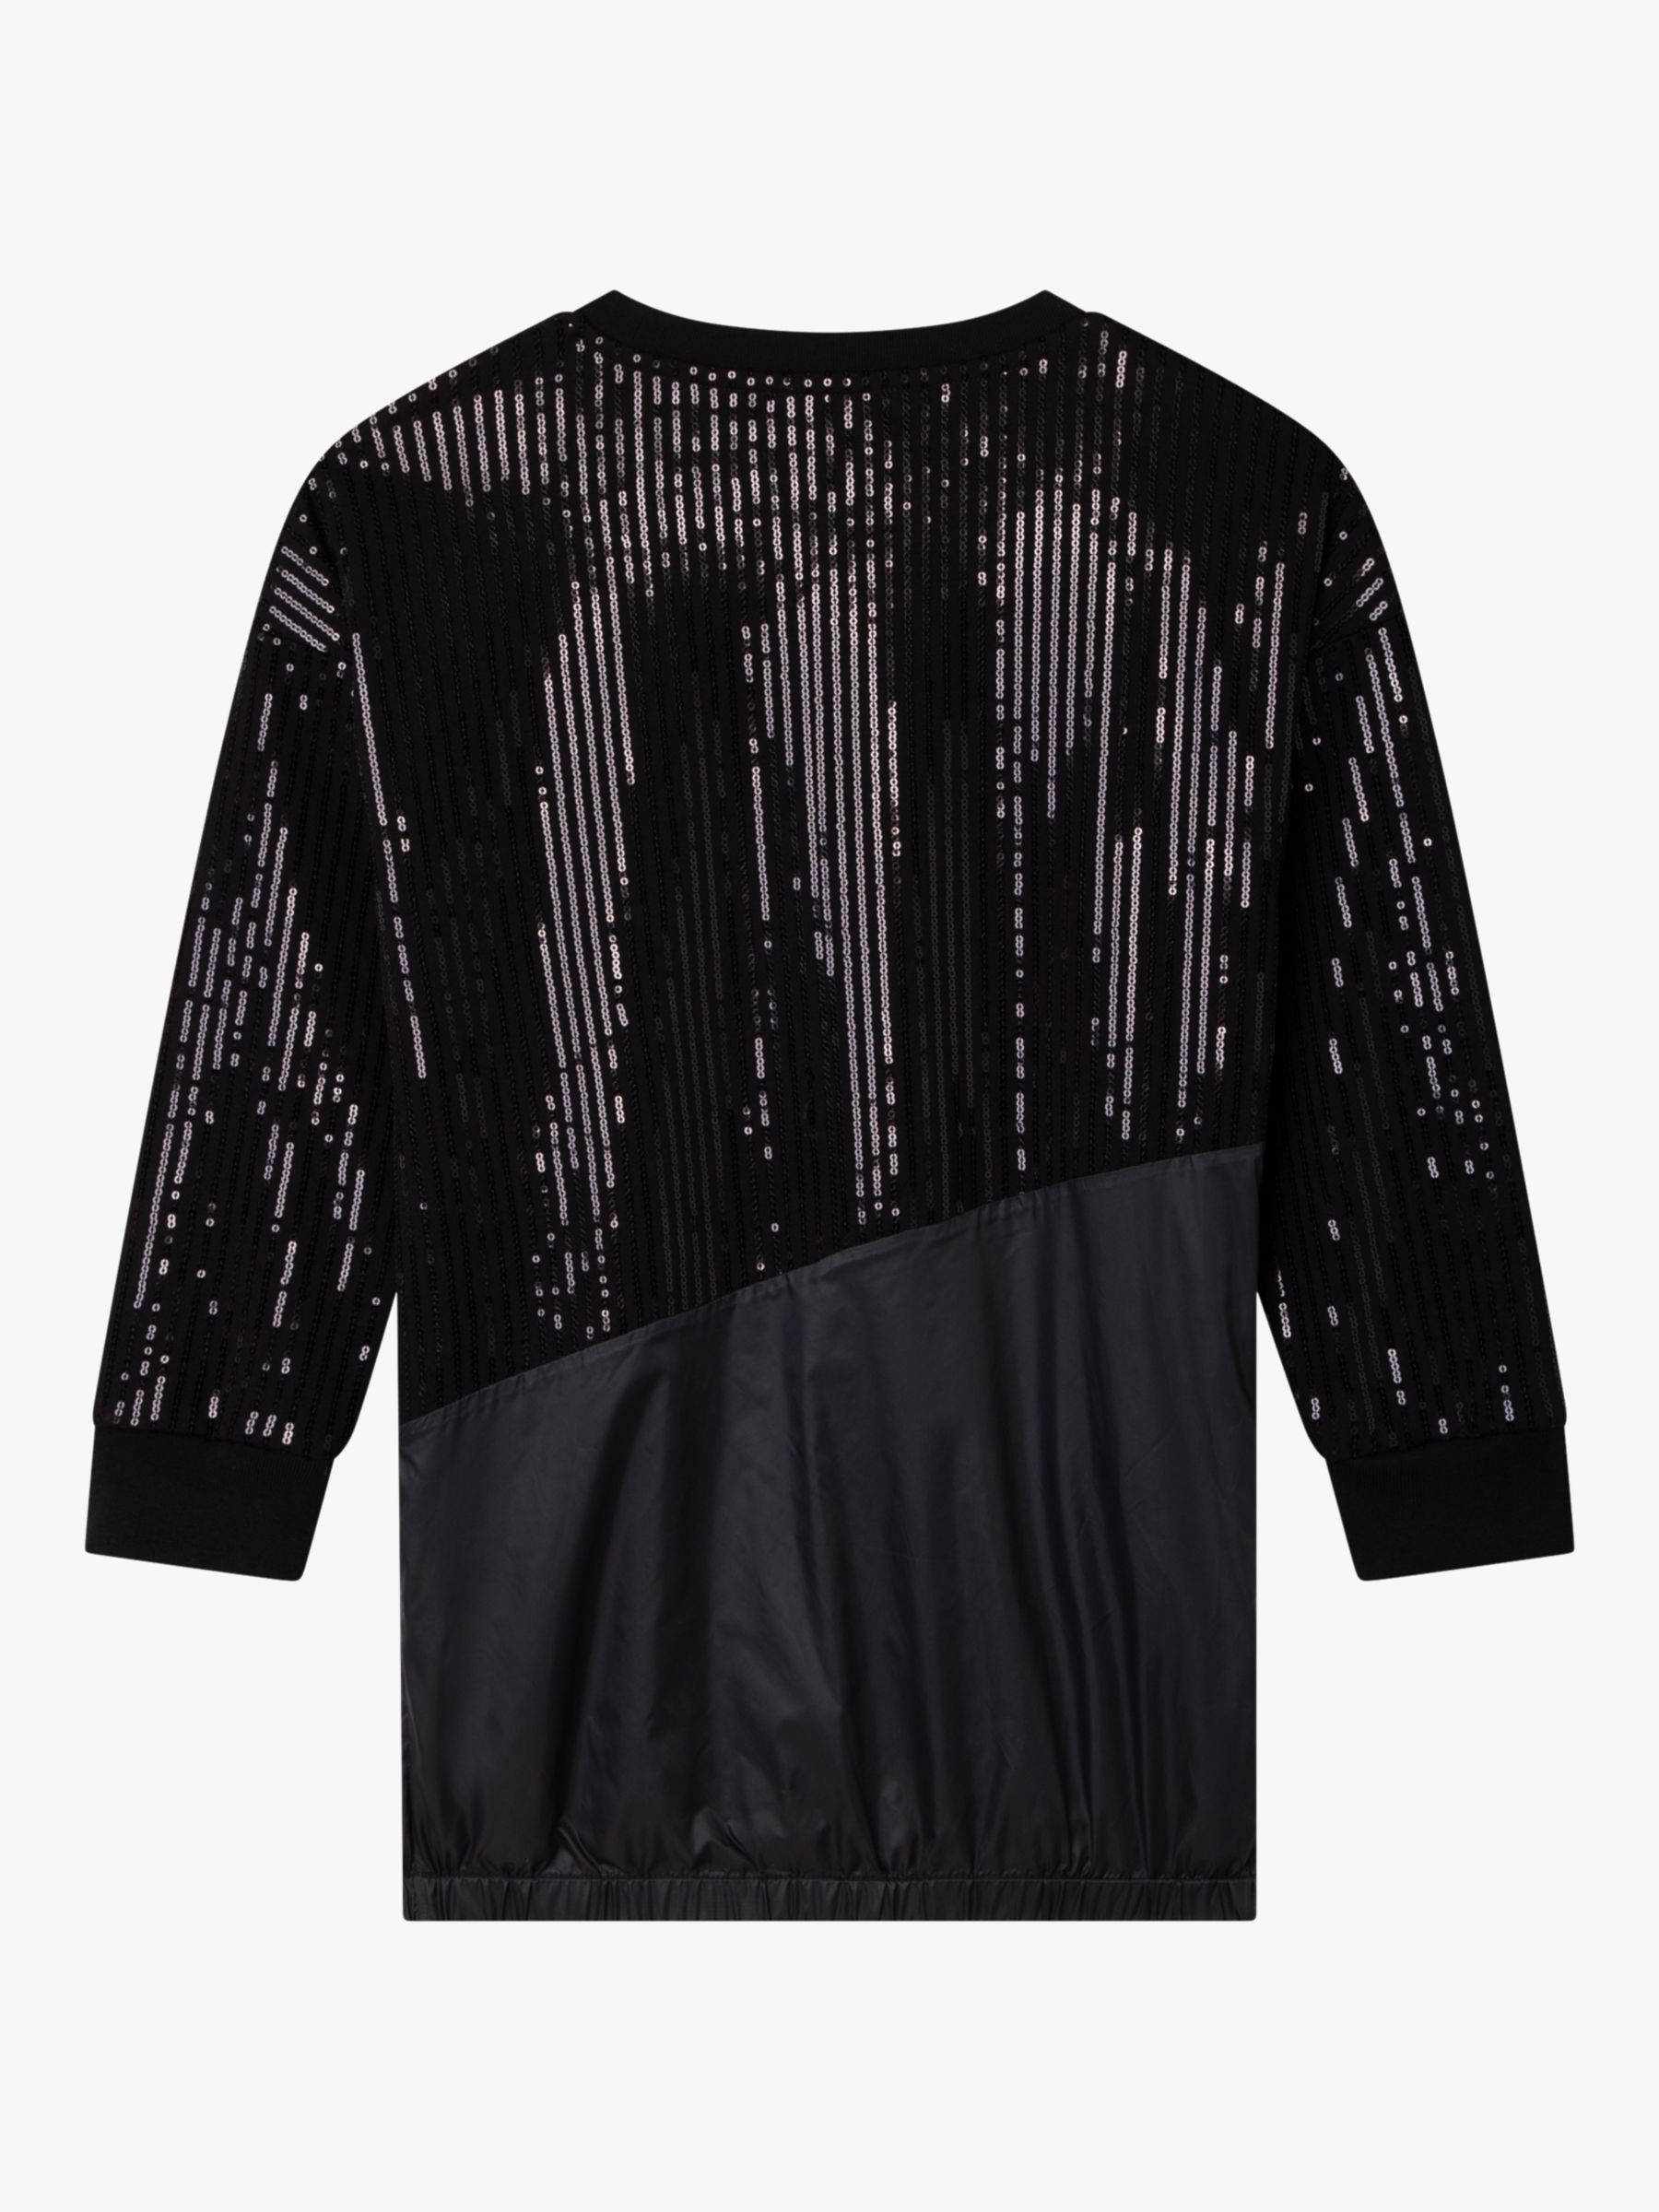 Buy DKNY Kids' Fancy Sequin Dress, Black Online at johnlewis.com